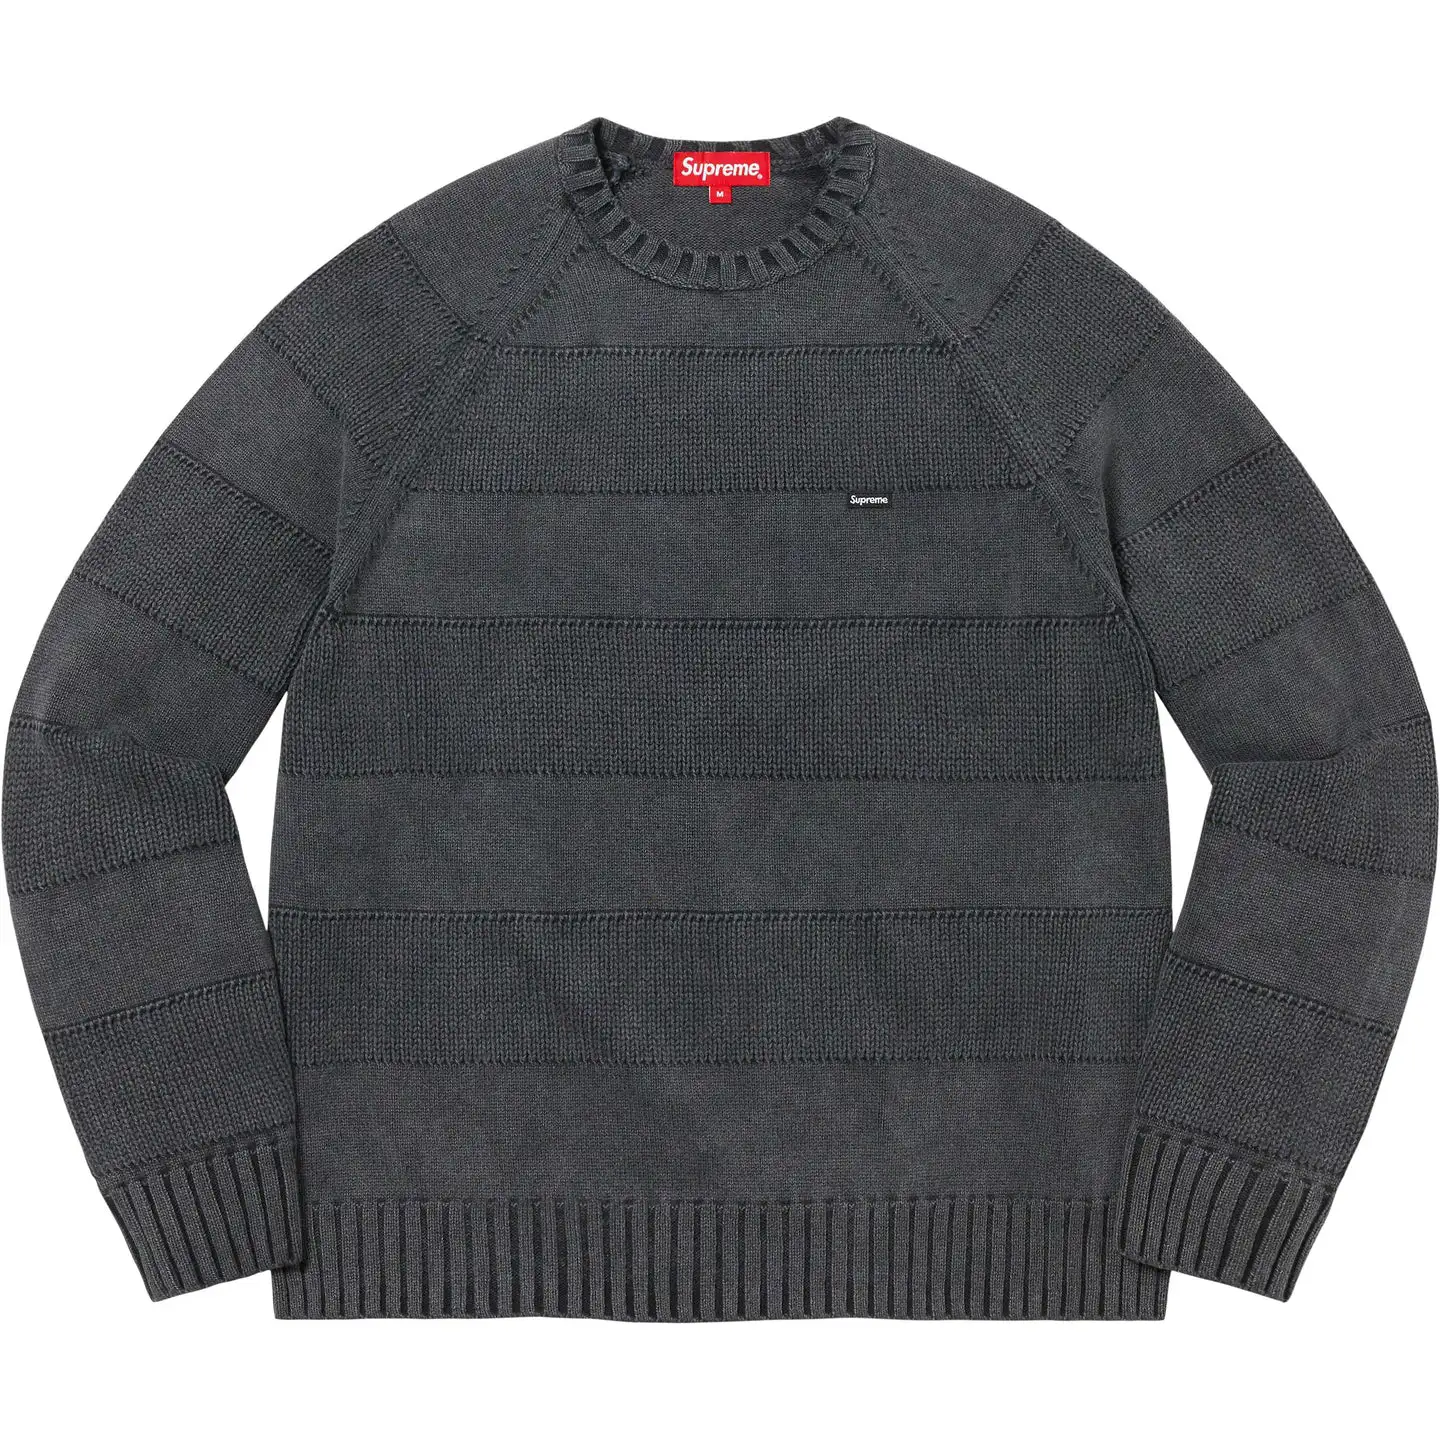 Supreme Small Box Stripe Sweater